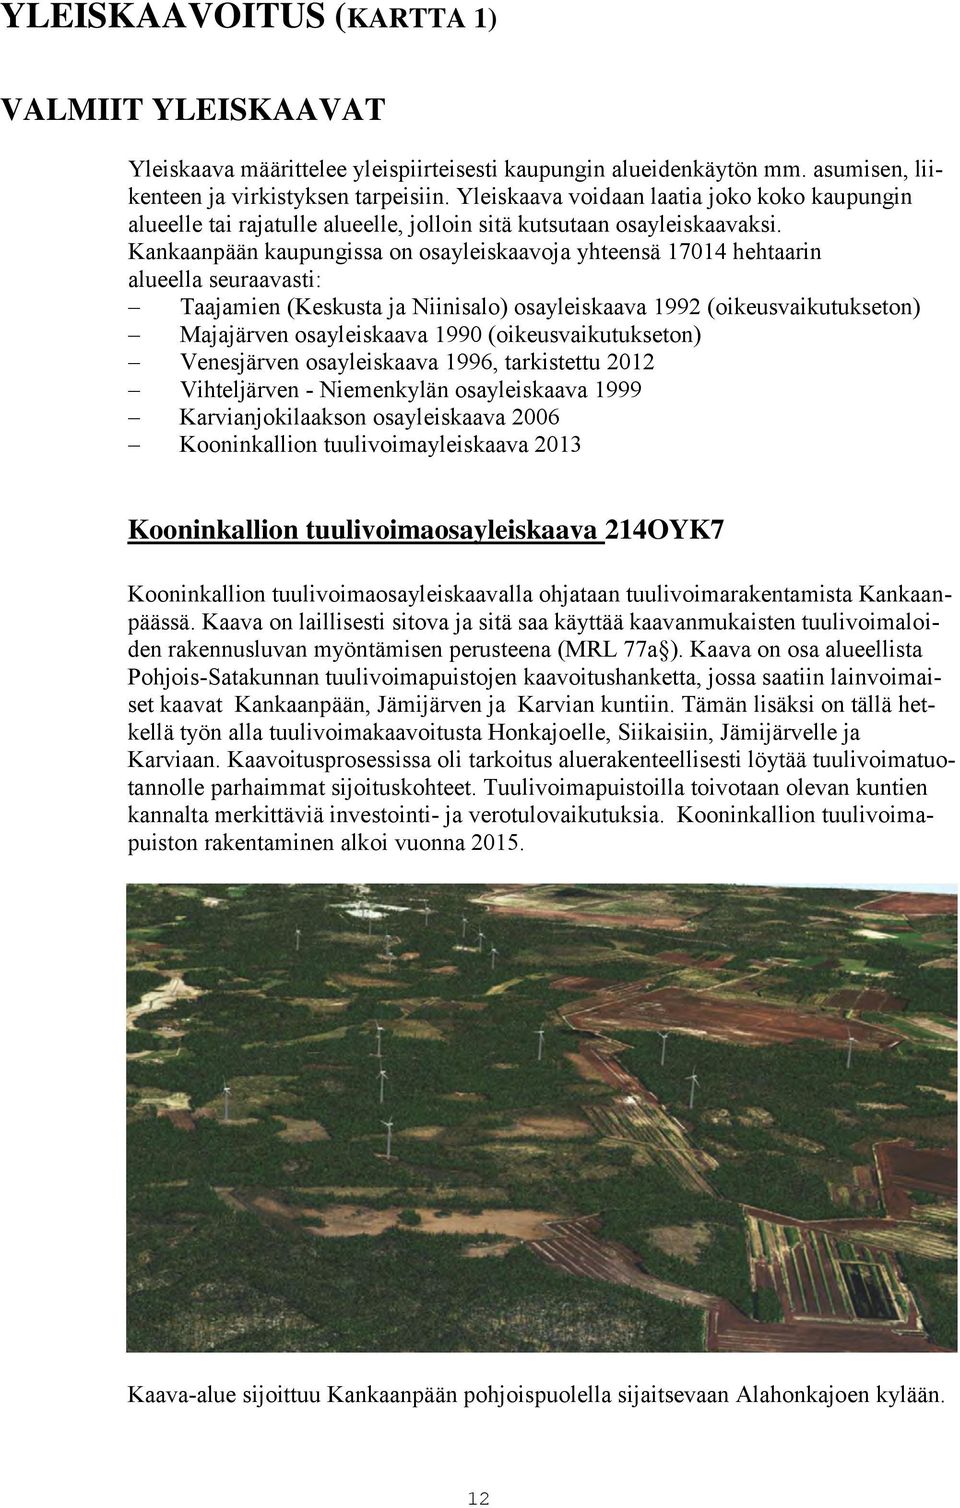 Kankaanpään kaupungissa on osayleiskaavoja yhteensä 17014 hehtaarin alueella seuraavasti: Taajamien (Keskusta ja Niinisalo) osayleiskaava 1992 (oikeusvaikutukseton) Majajärven osayleiskaava 1990